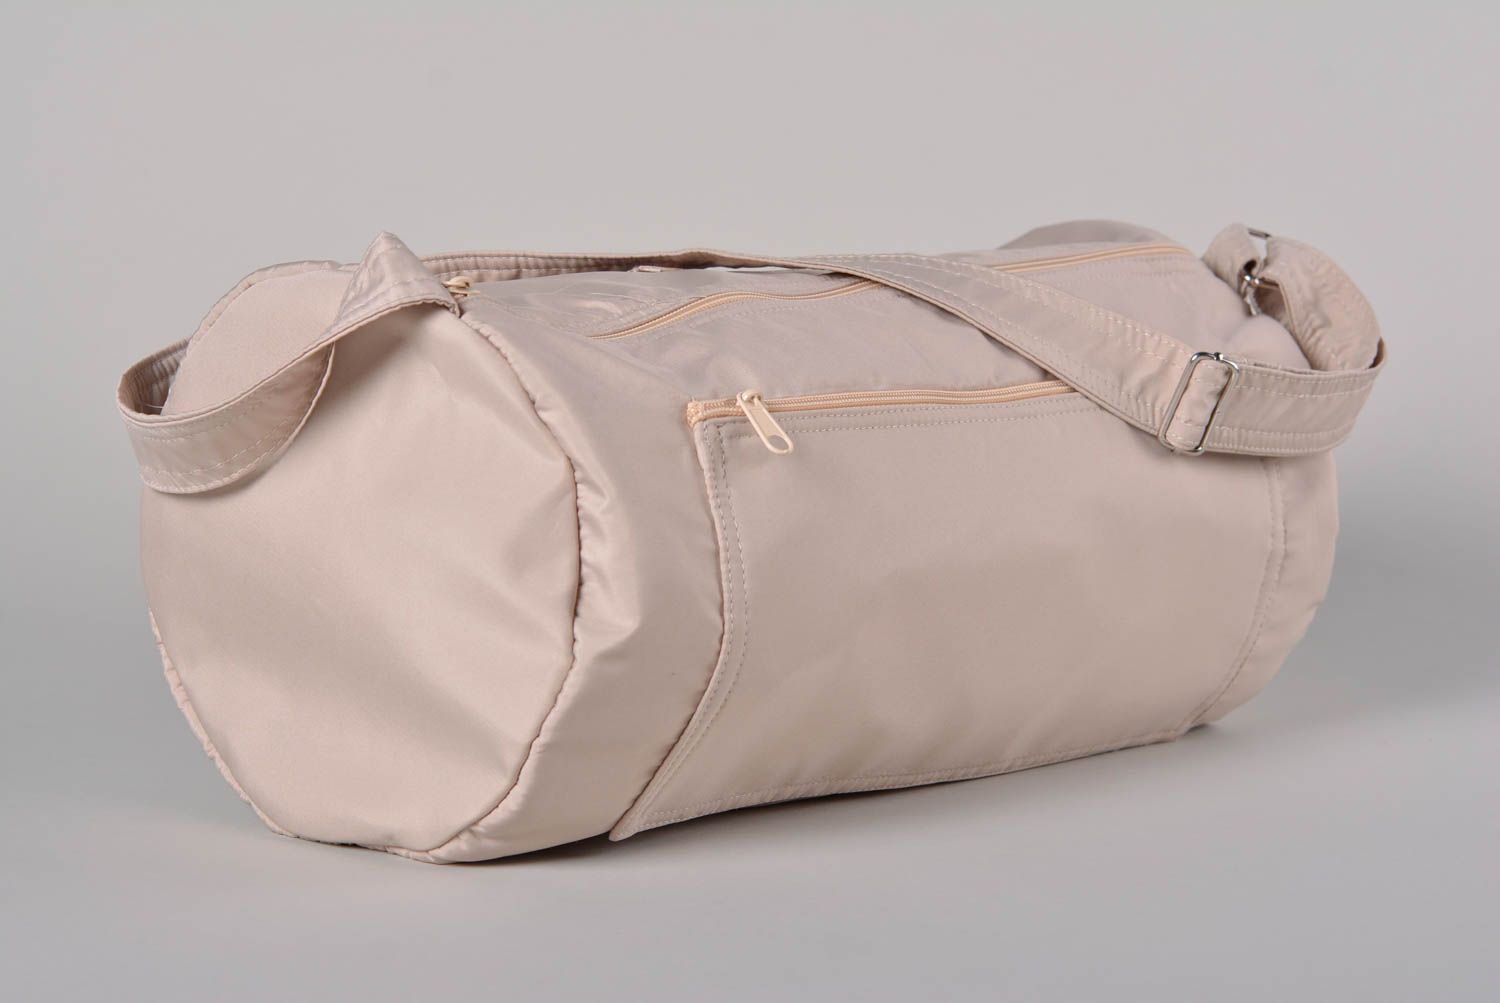 Сумка ручной работы женская сумка стильная оригинальная тканевая сумка Ежик фото 2